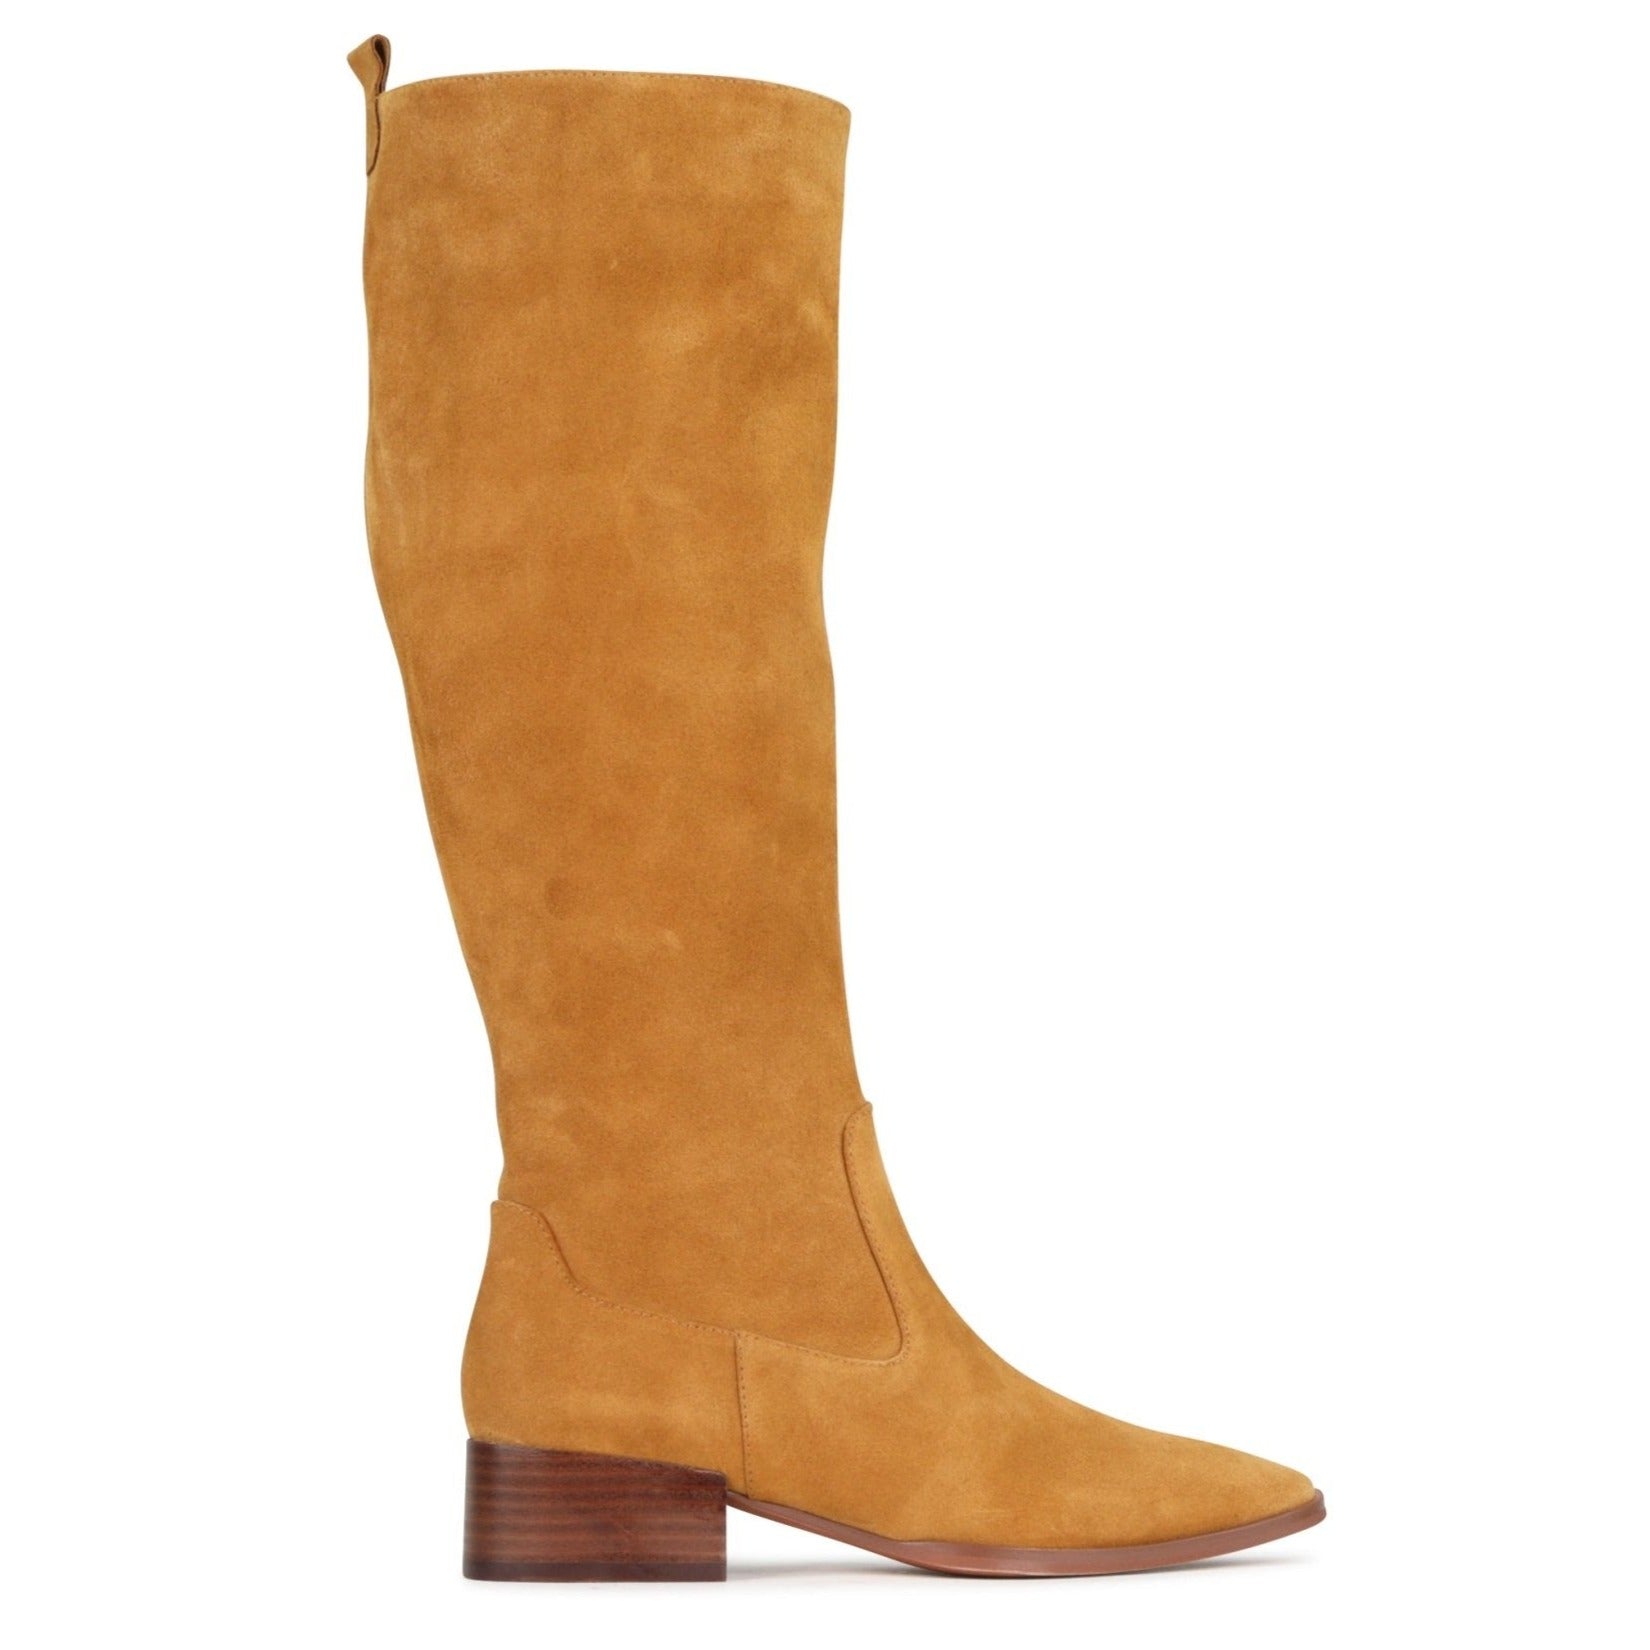 KENLEY - EOS Footwear - Long Boots #color_Camel